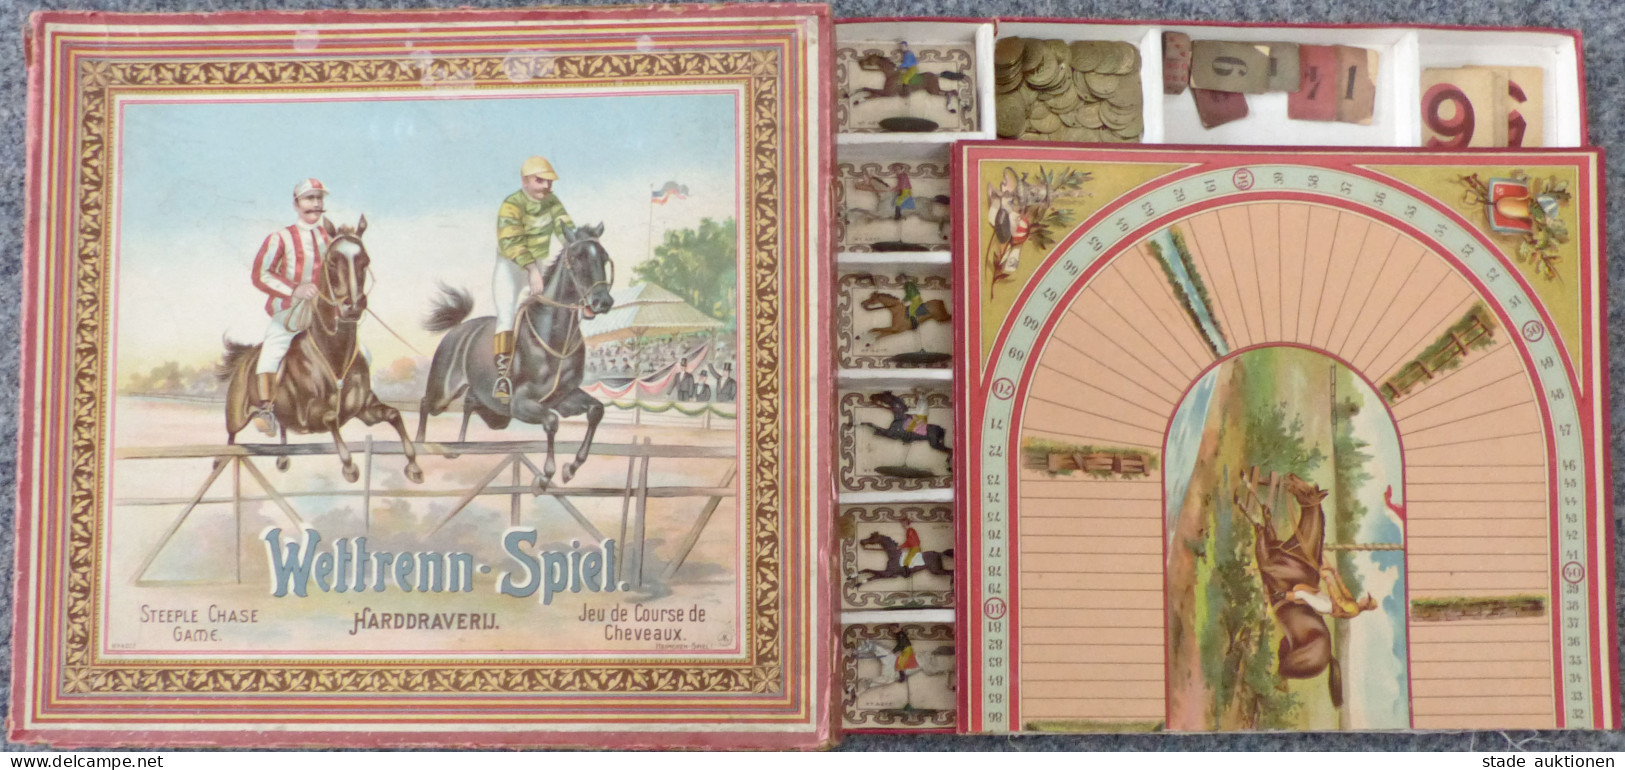 Spielzeug Wettrenn-Spiel Von Heimchen-Spiel 1902, Mit Original-Schachtel Und Anleitung, Alle Pferde Und Spielgeld Vorhan - Games & Toys